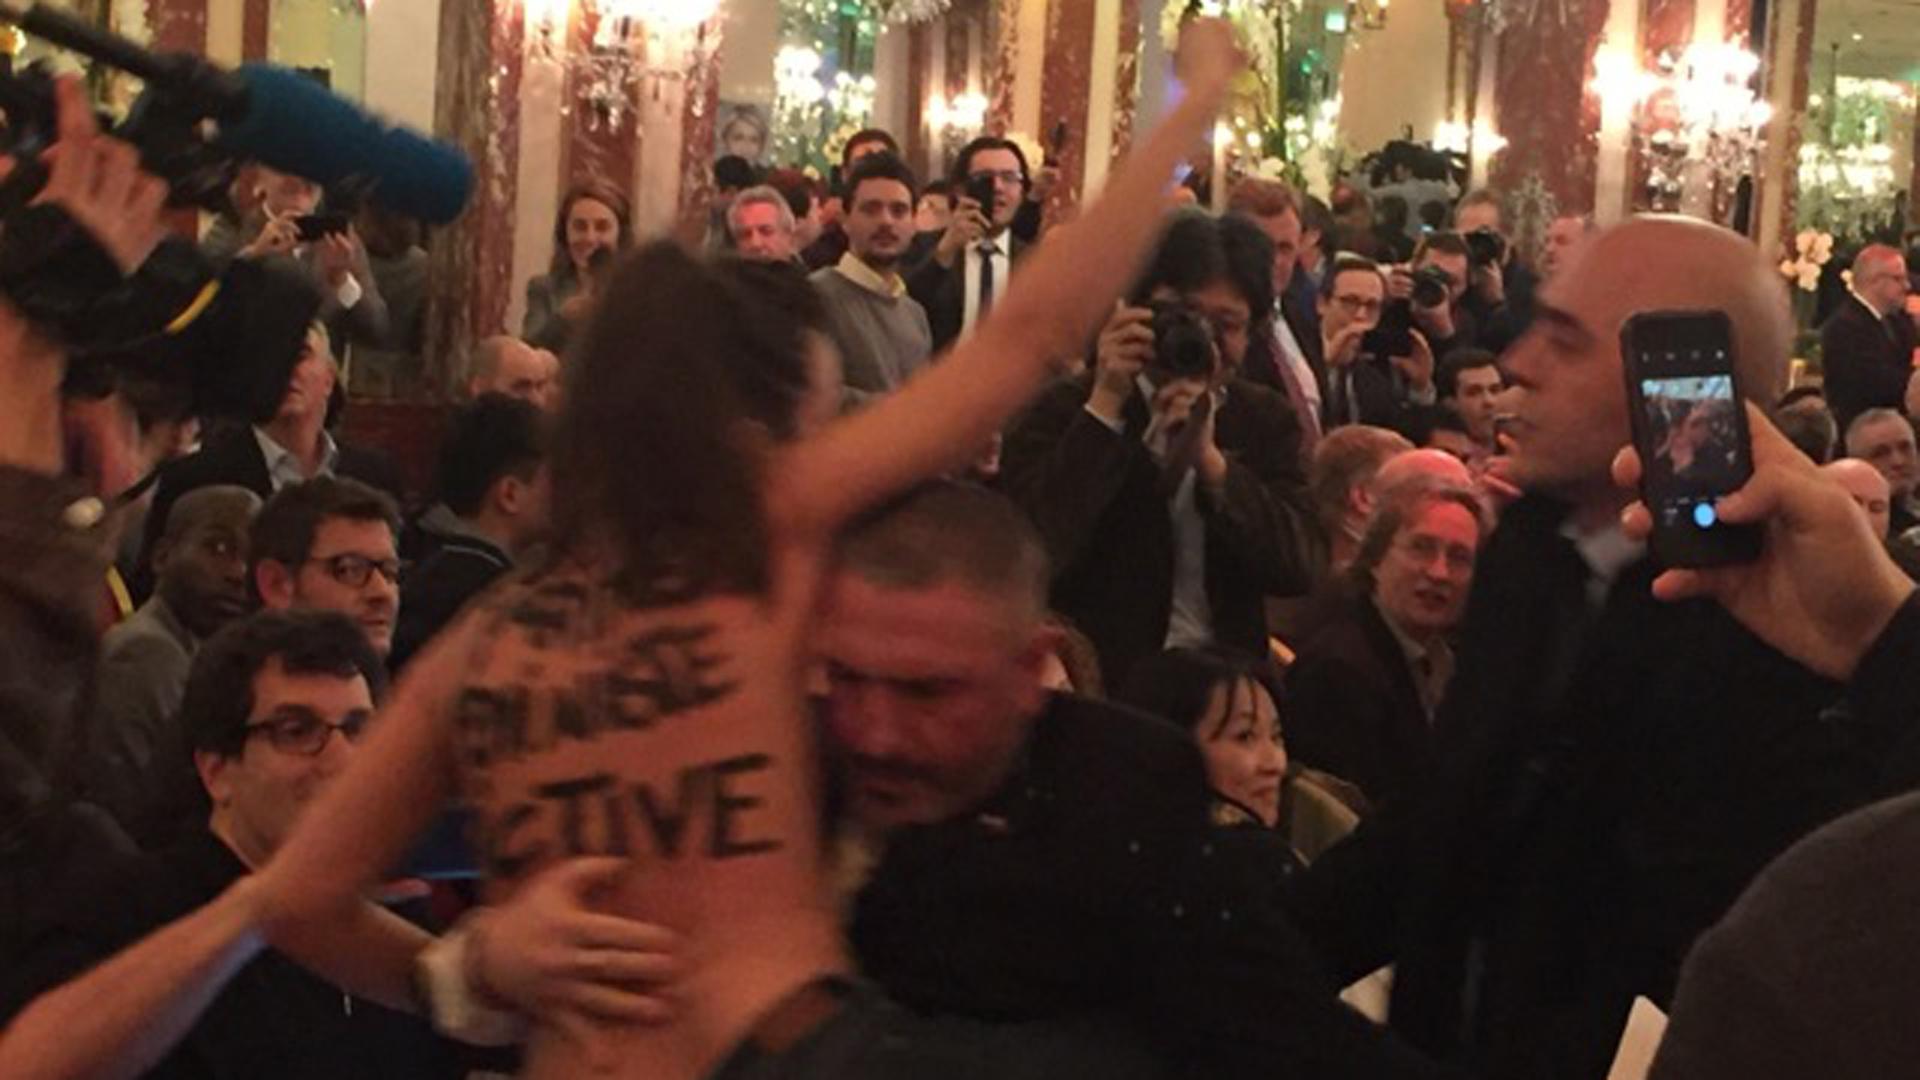 Eine Femen-Aktivistin störte die Pressekonferenz von Marine Le Pen.